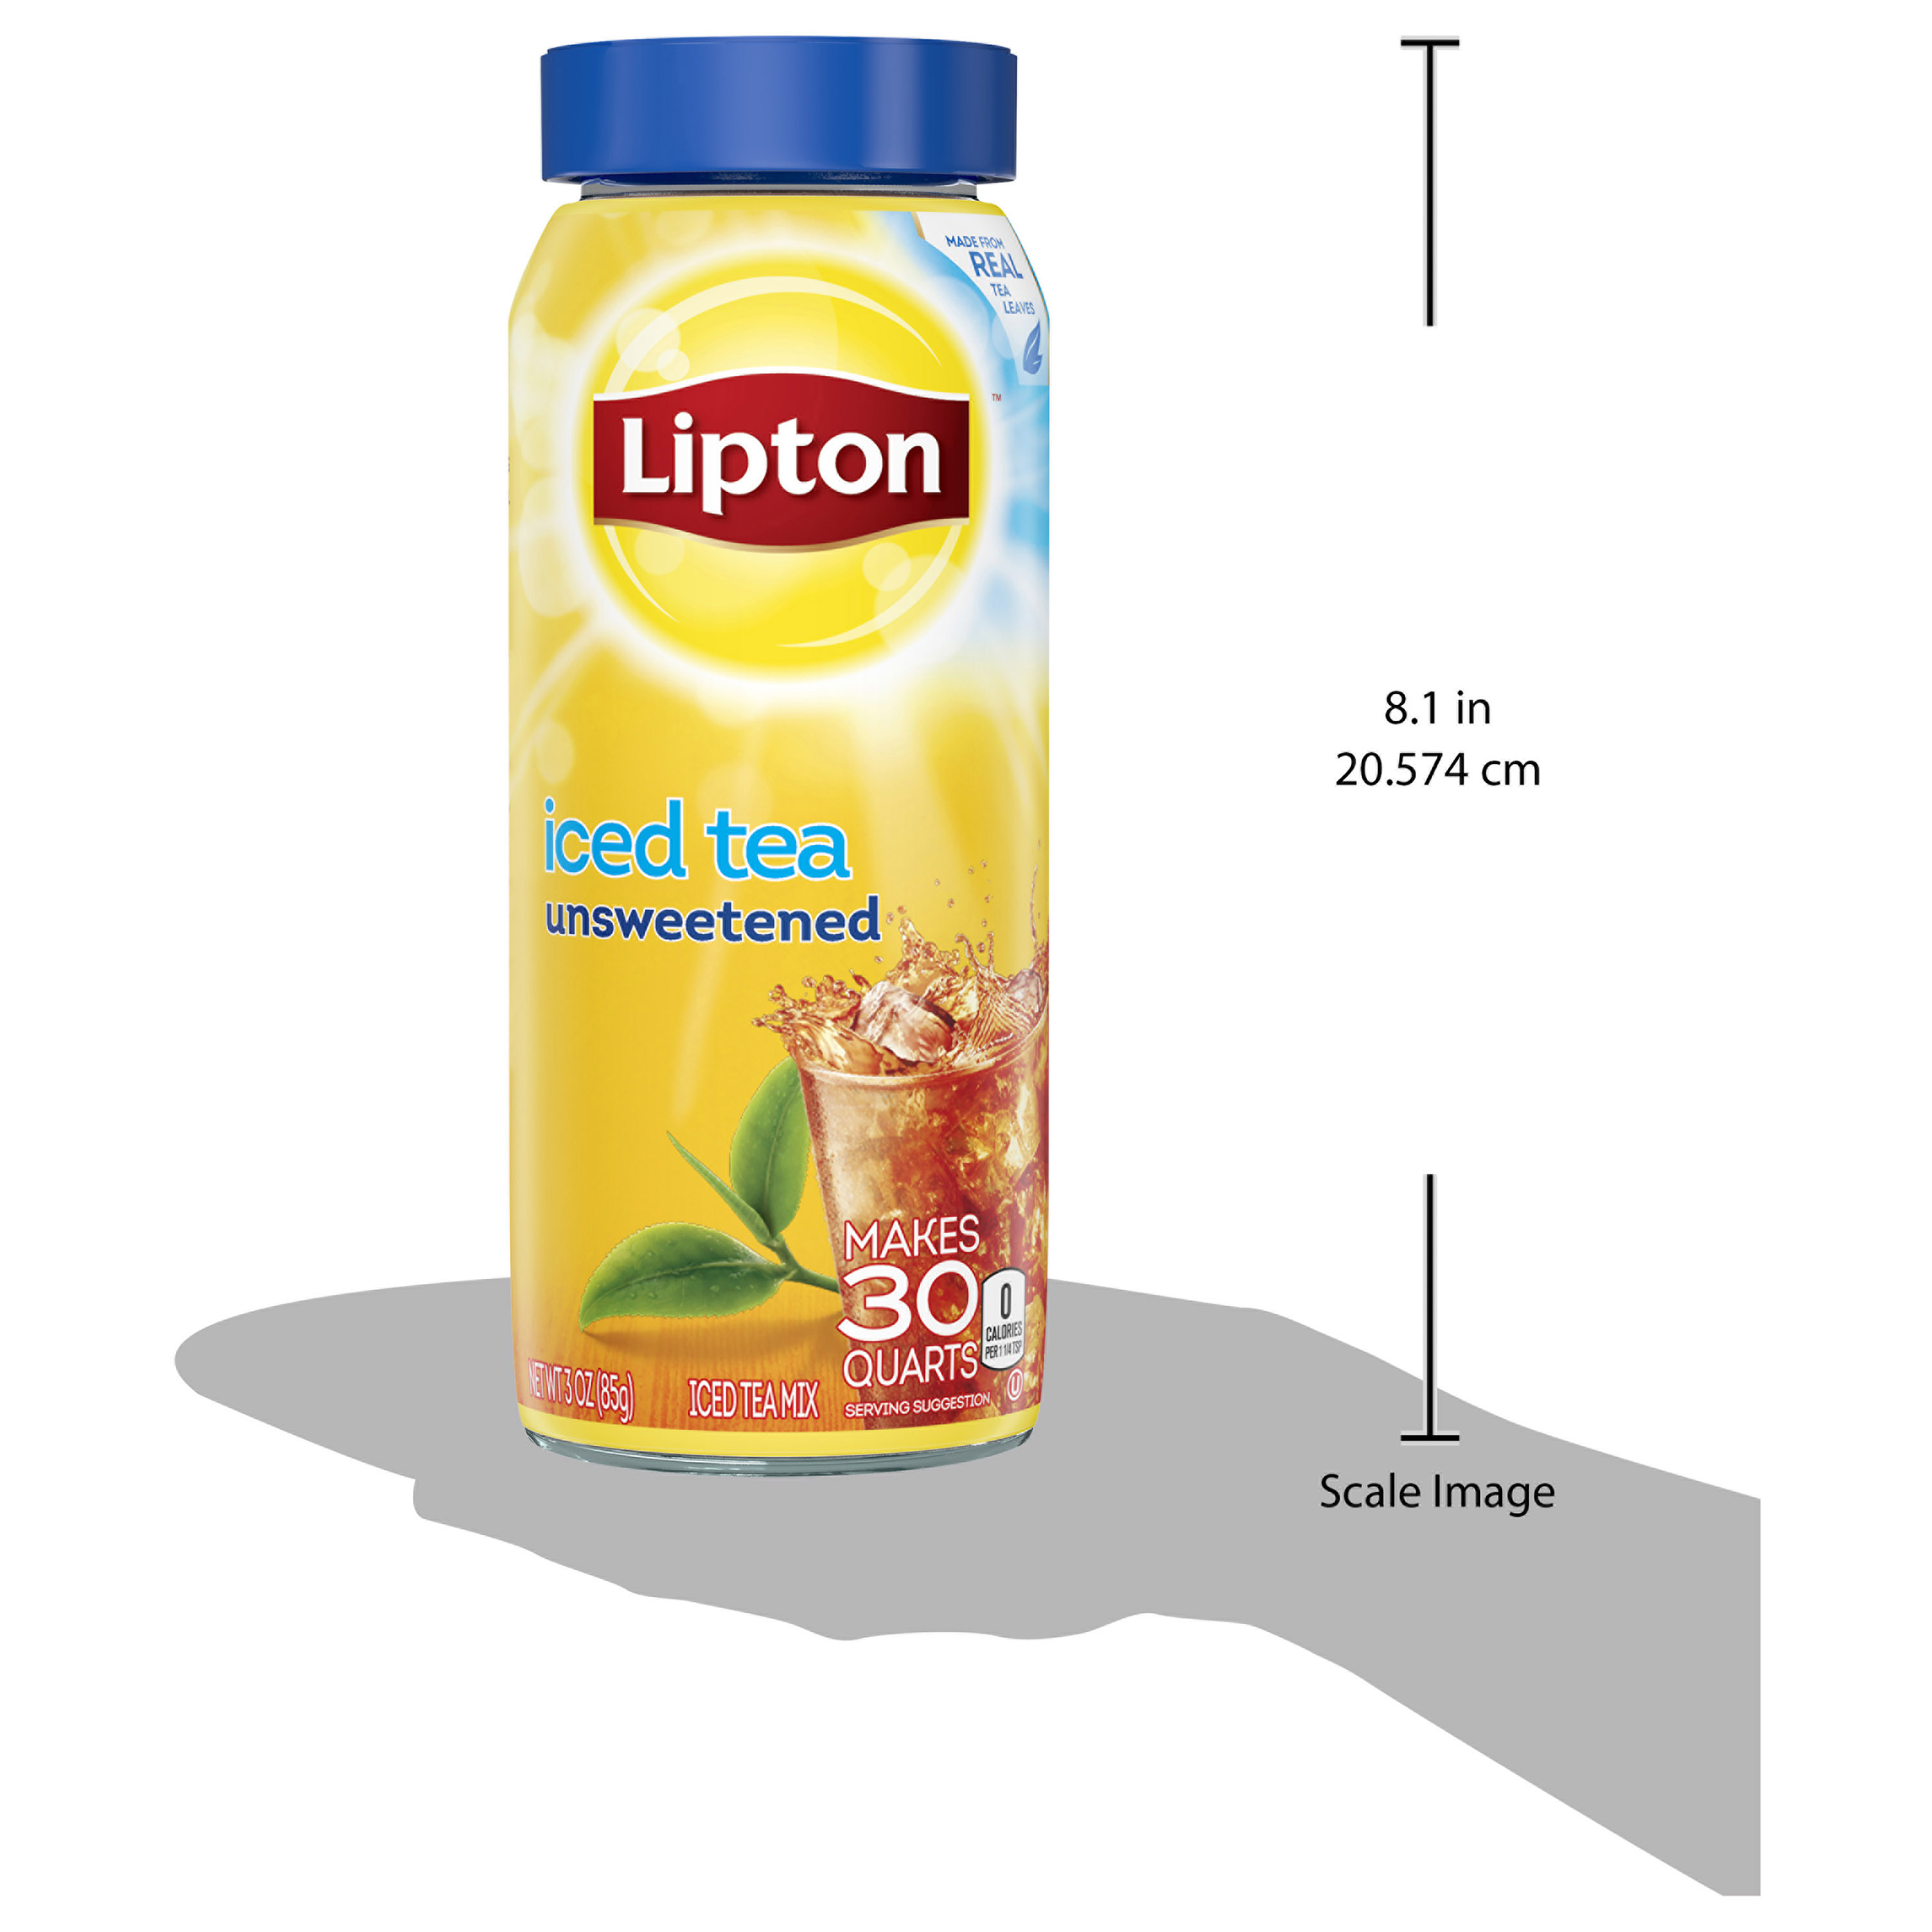 Lipton Iced Tea Mix Black Tea, Caffeinated, Makes 30 Quarts, 3 oz Can - image 4 of 8